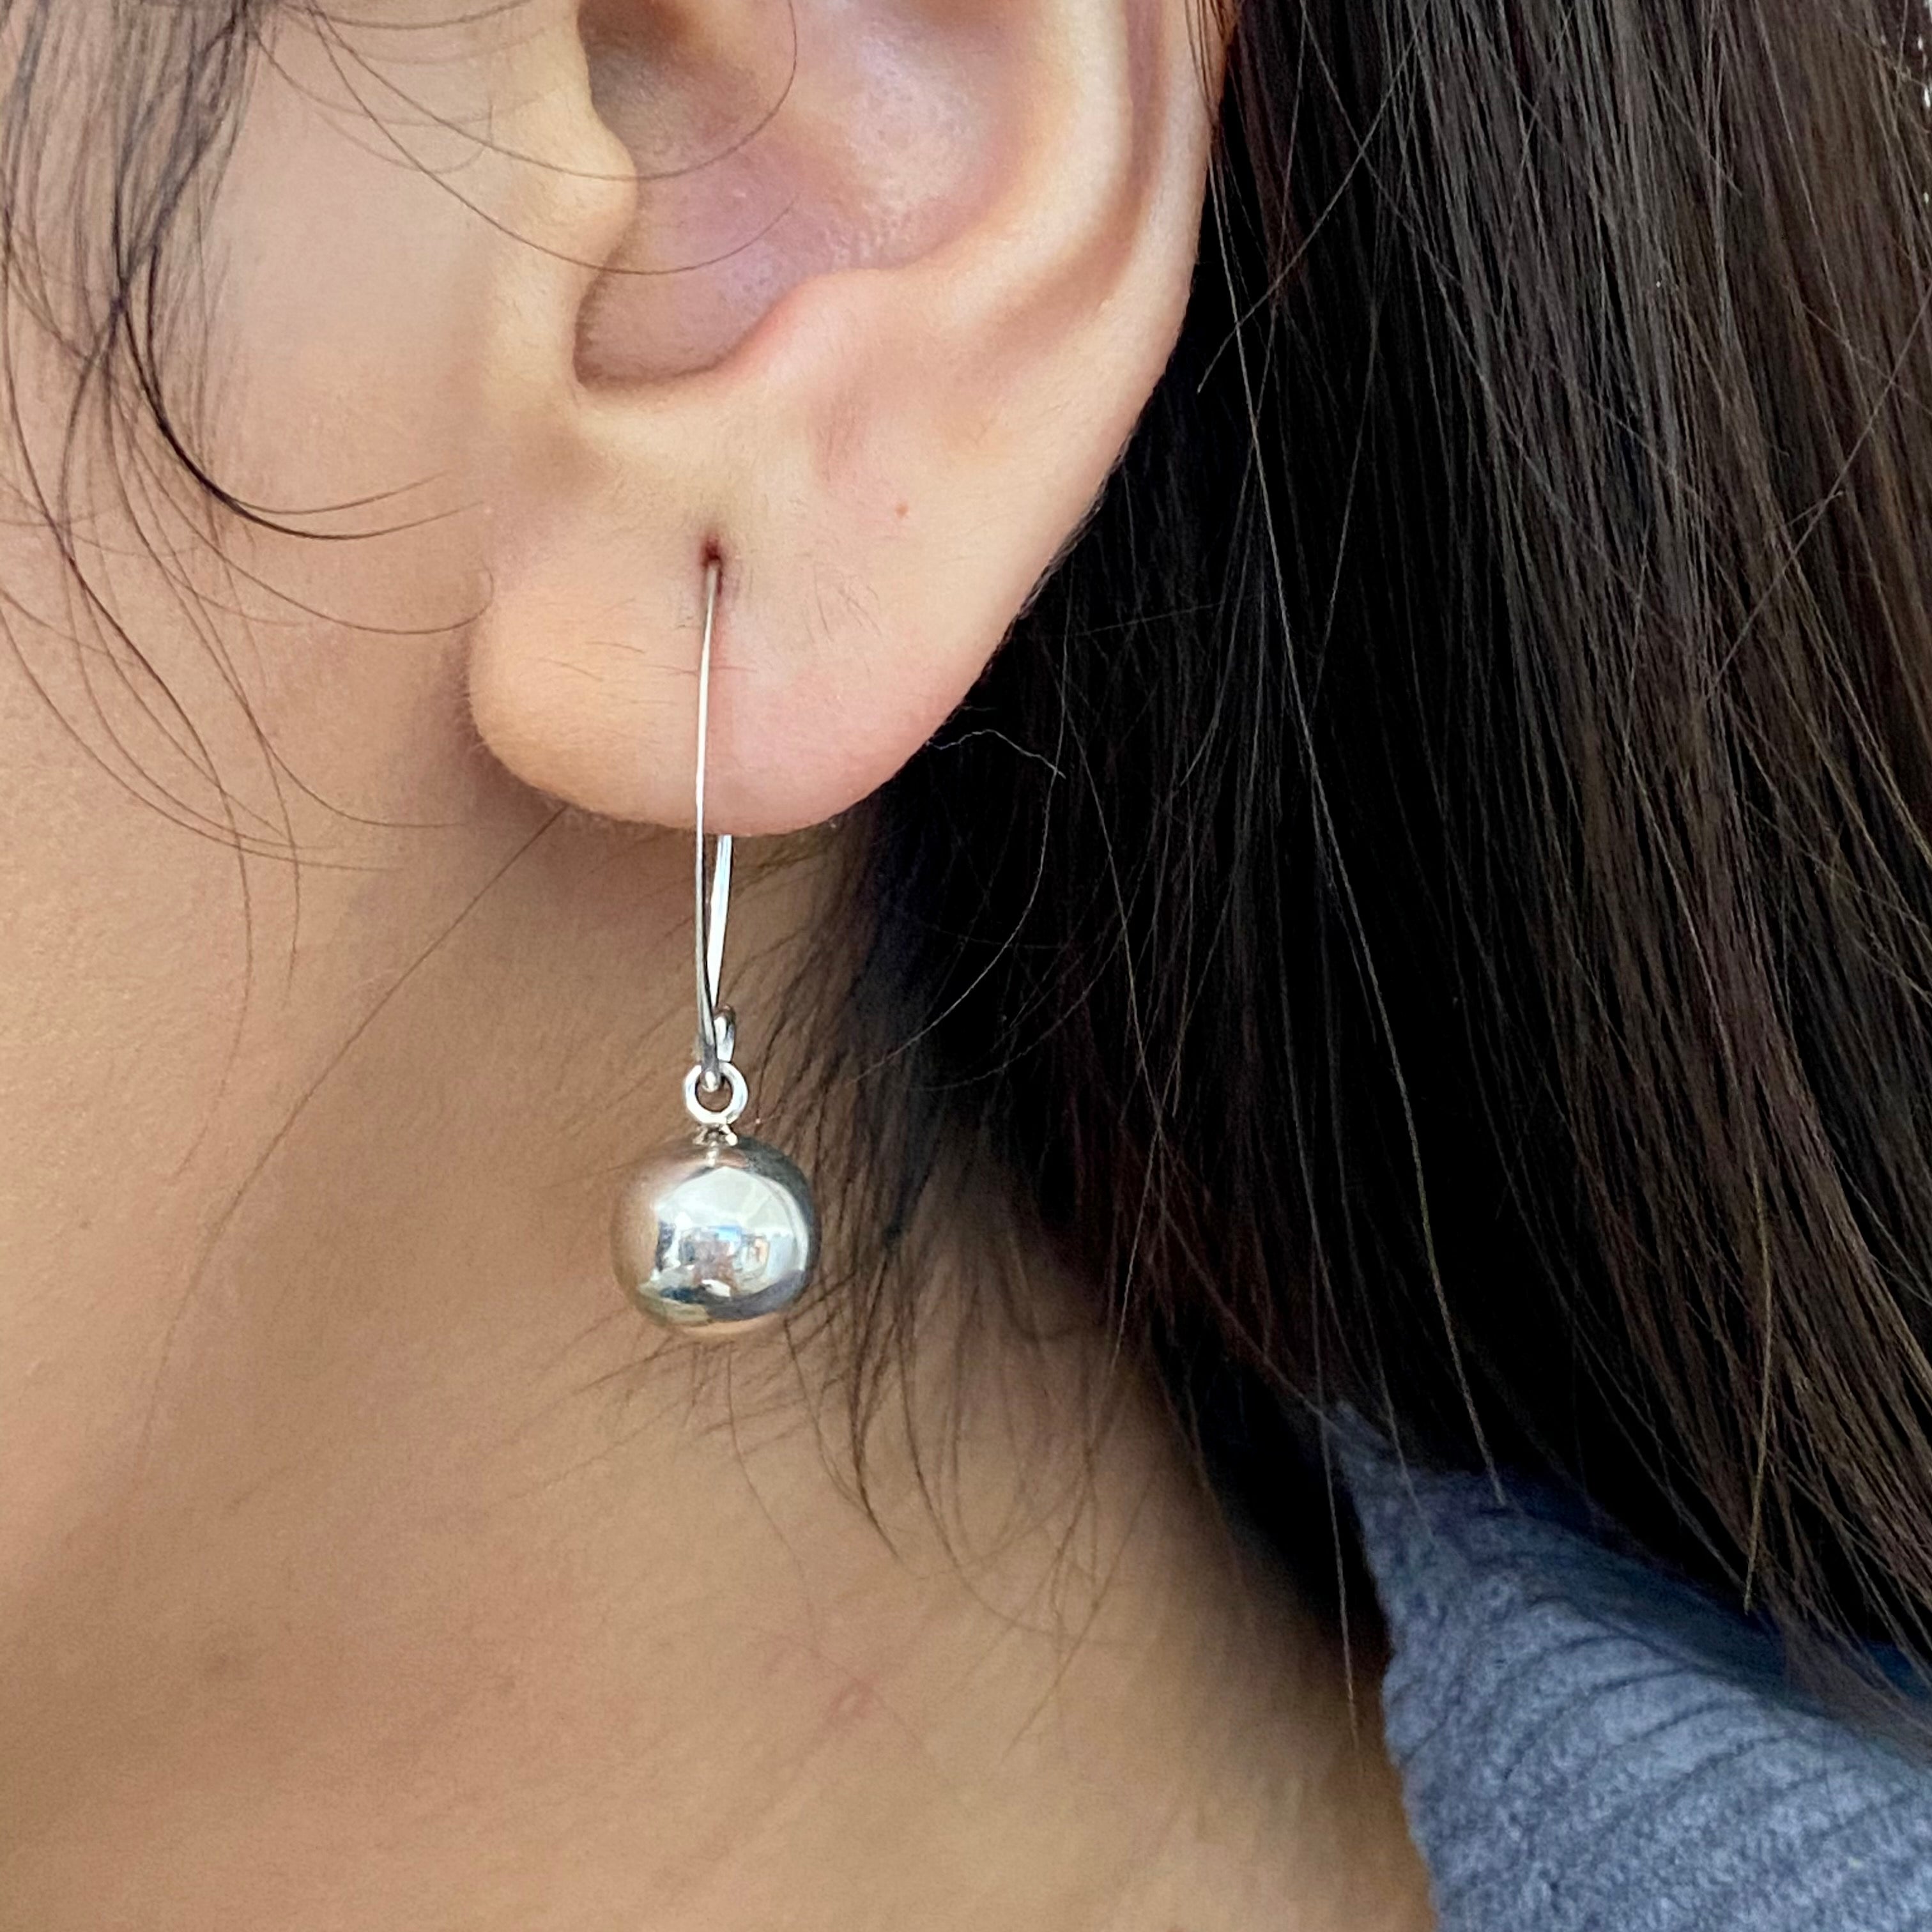 Sterling Silver Threader Earrings - Sphere